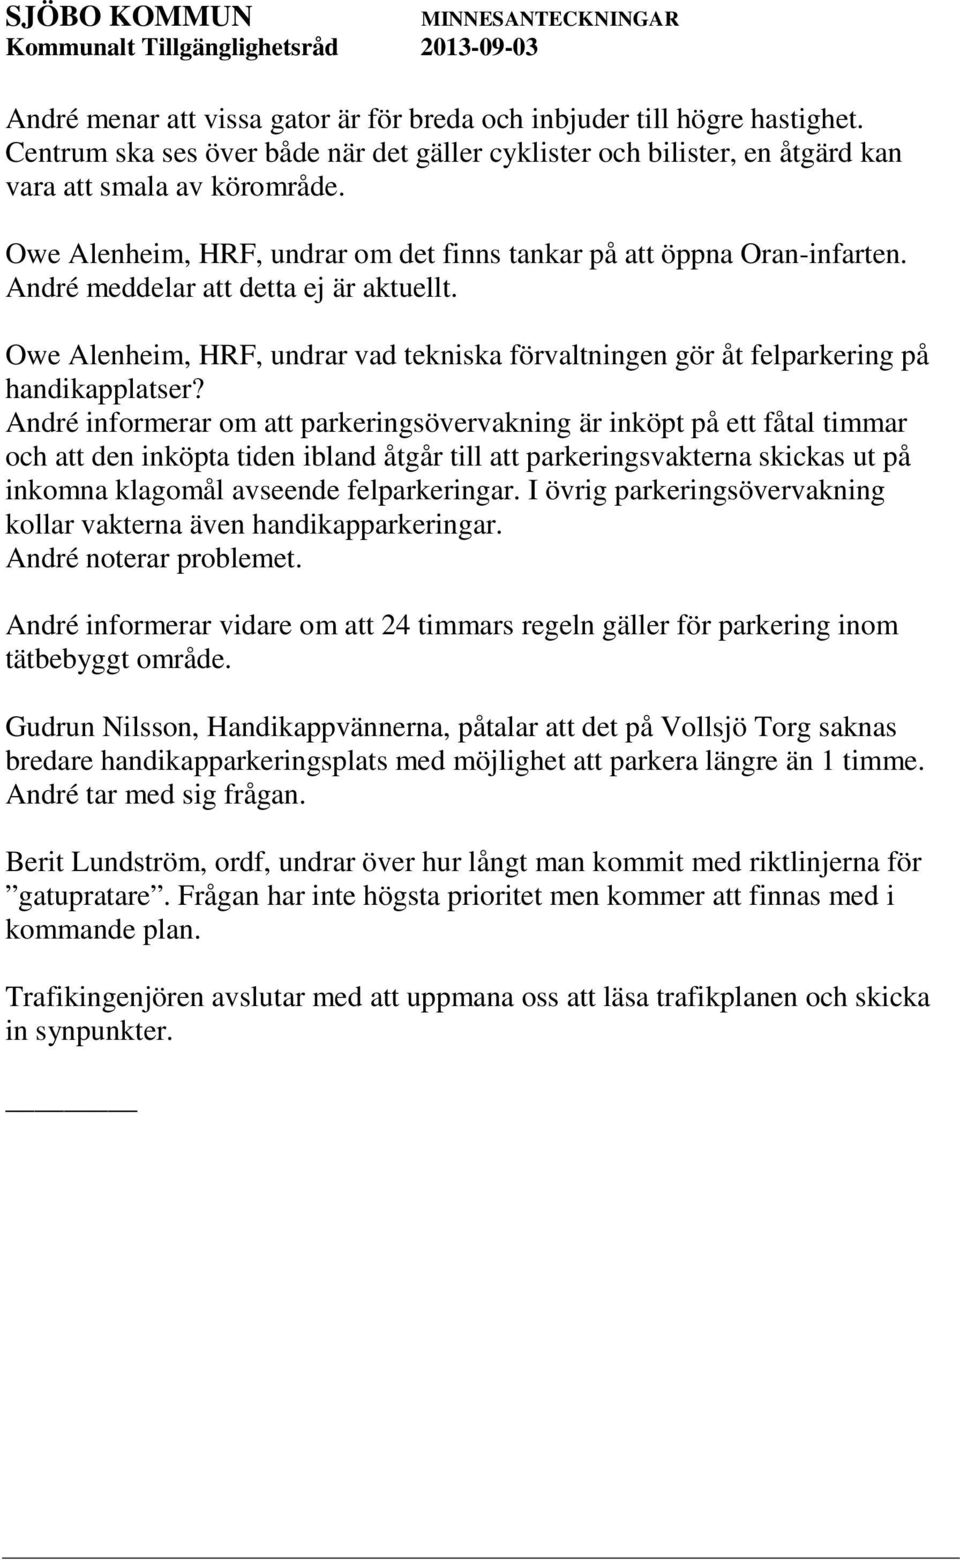 Owe Alenheim, HRF, undrar vad tekniska förvaltningen gör åt felparkering på handikapplatser?